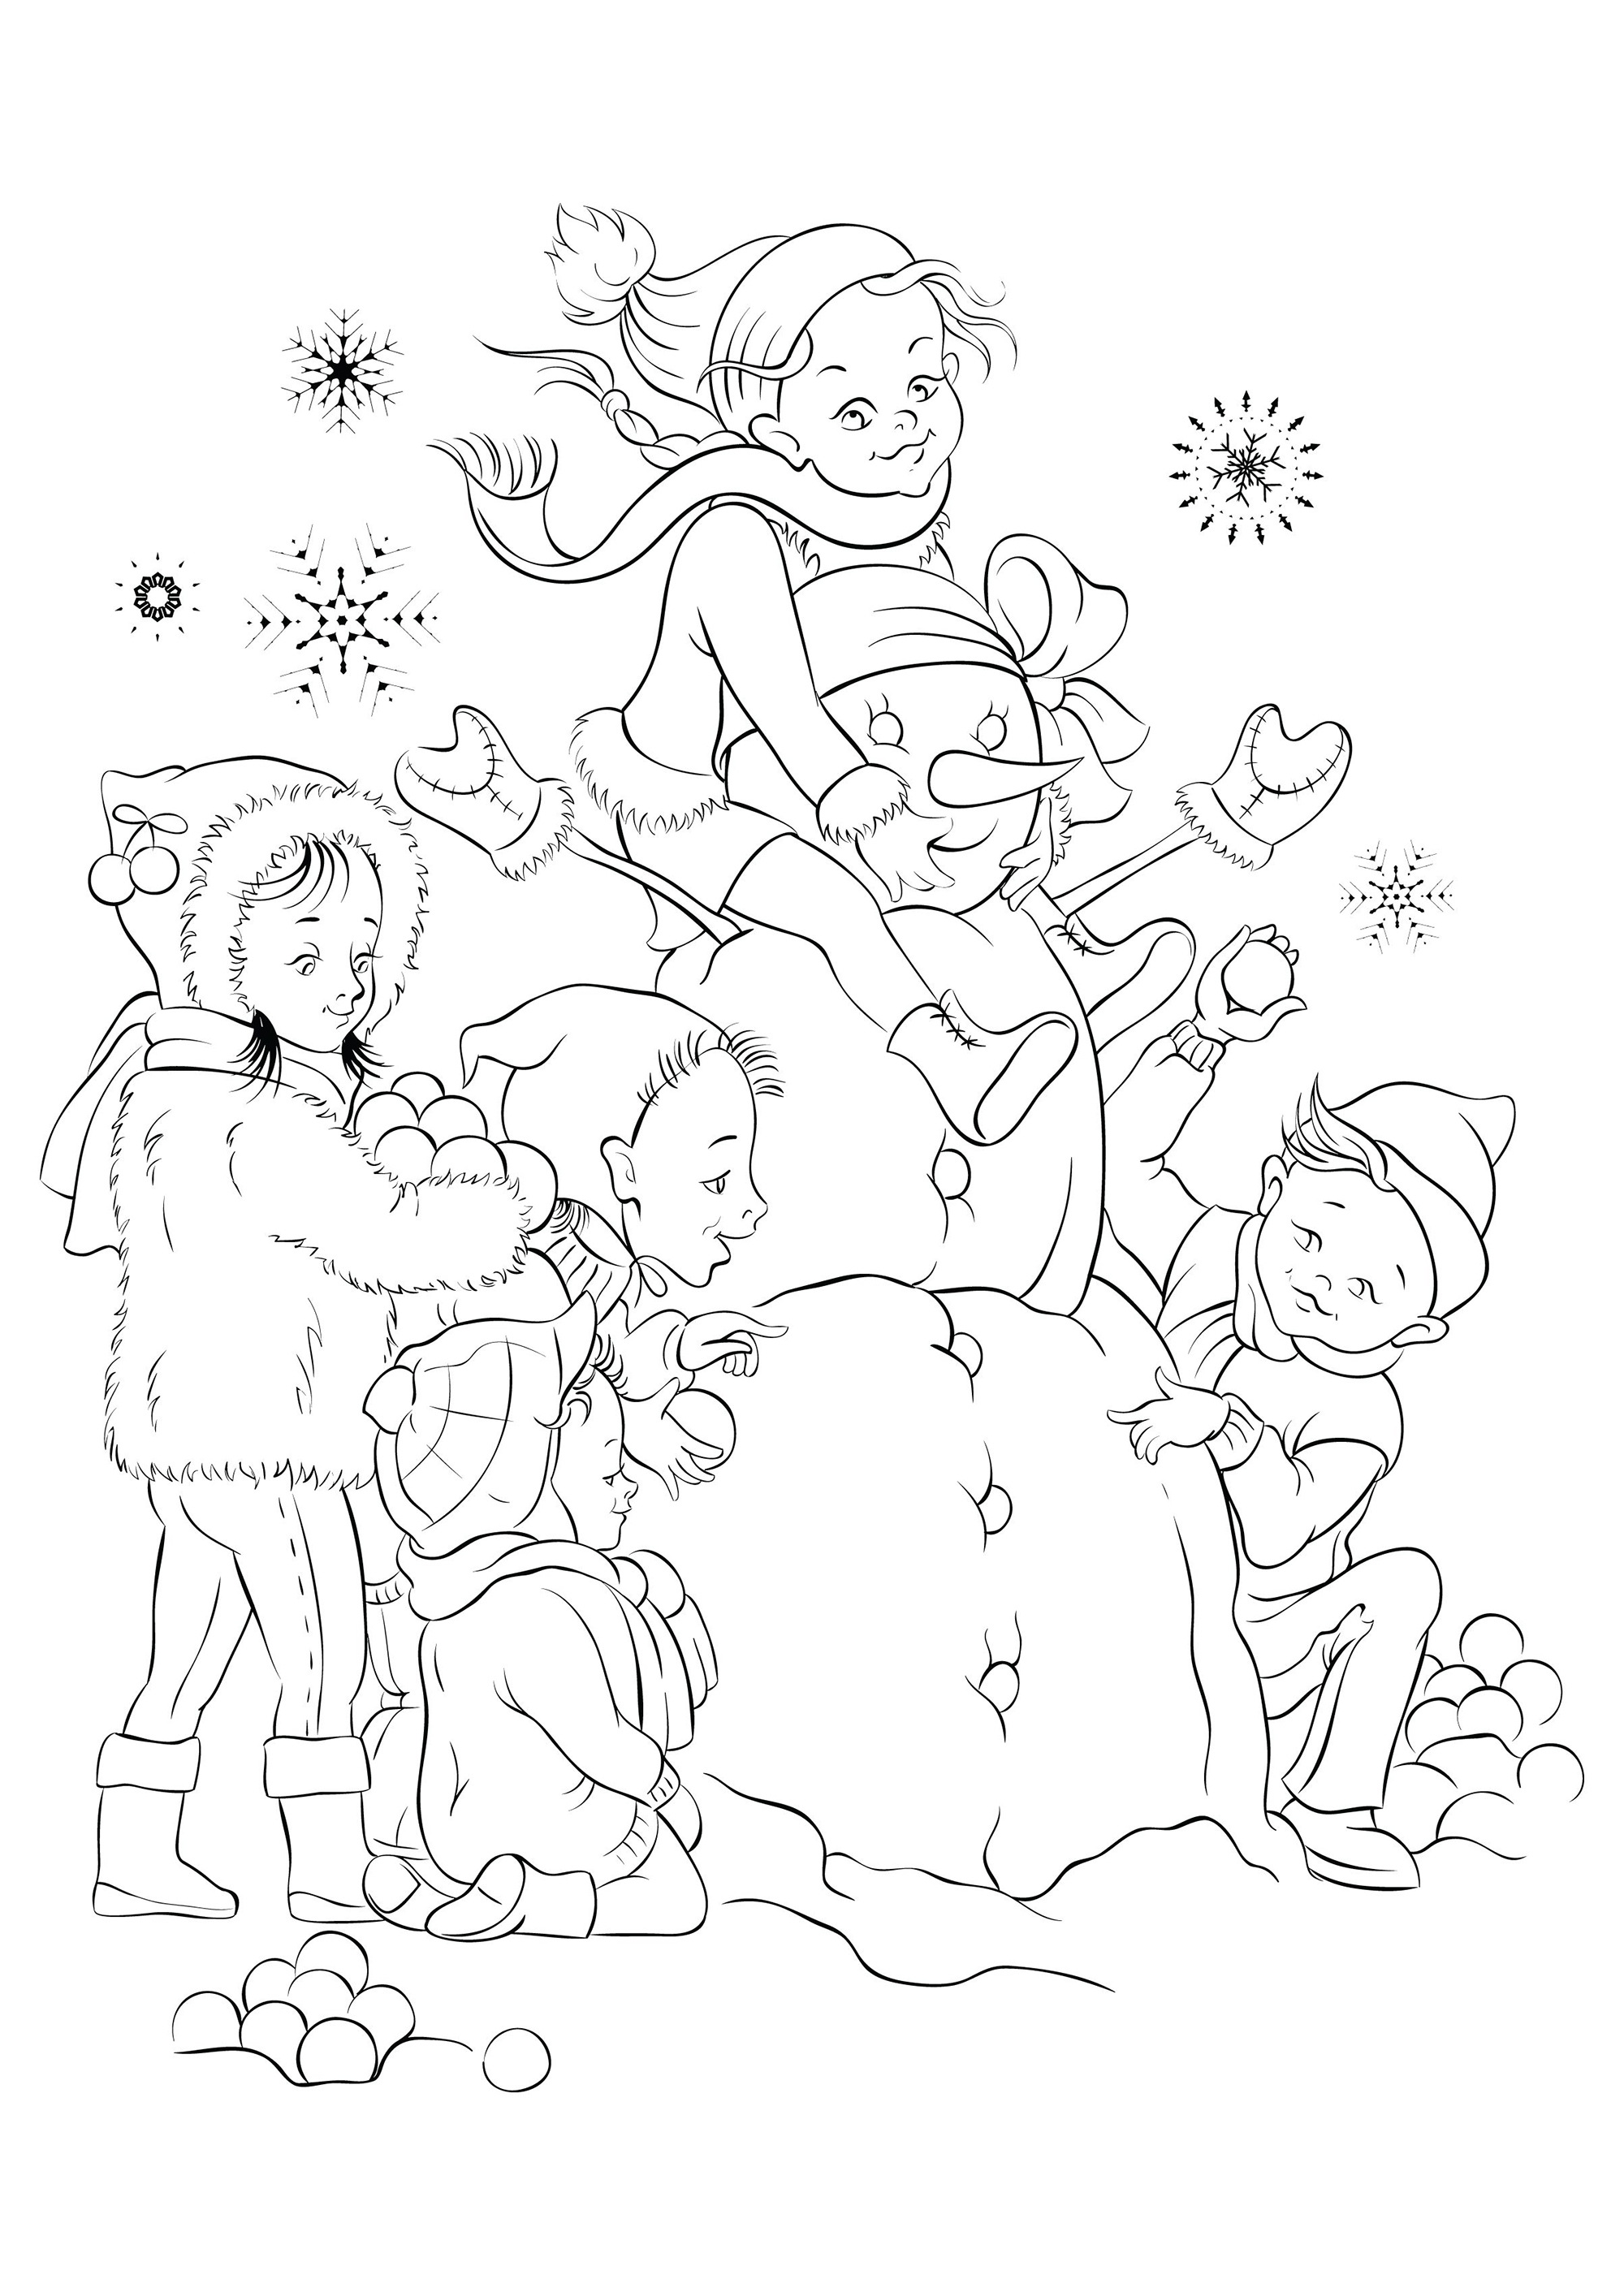 As crianças e o boneco de neve que fizeram com neve fresca, Fonte : 123rf   Artista : regina555